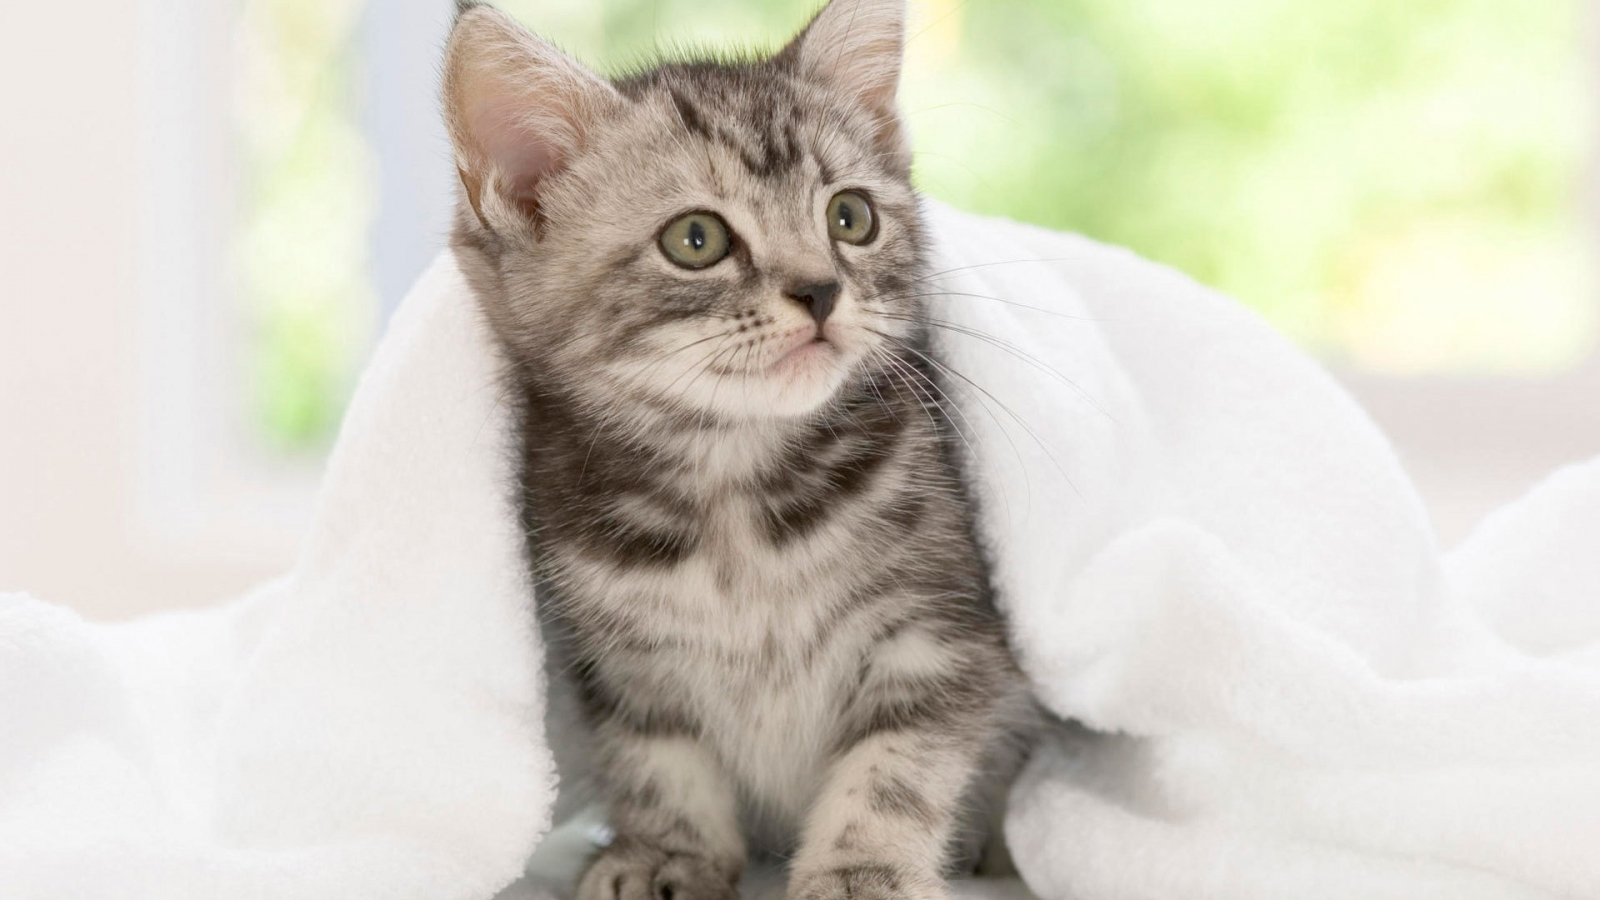 American Shorthair Kitten for 1600 x 900 HDTV resolution